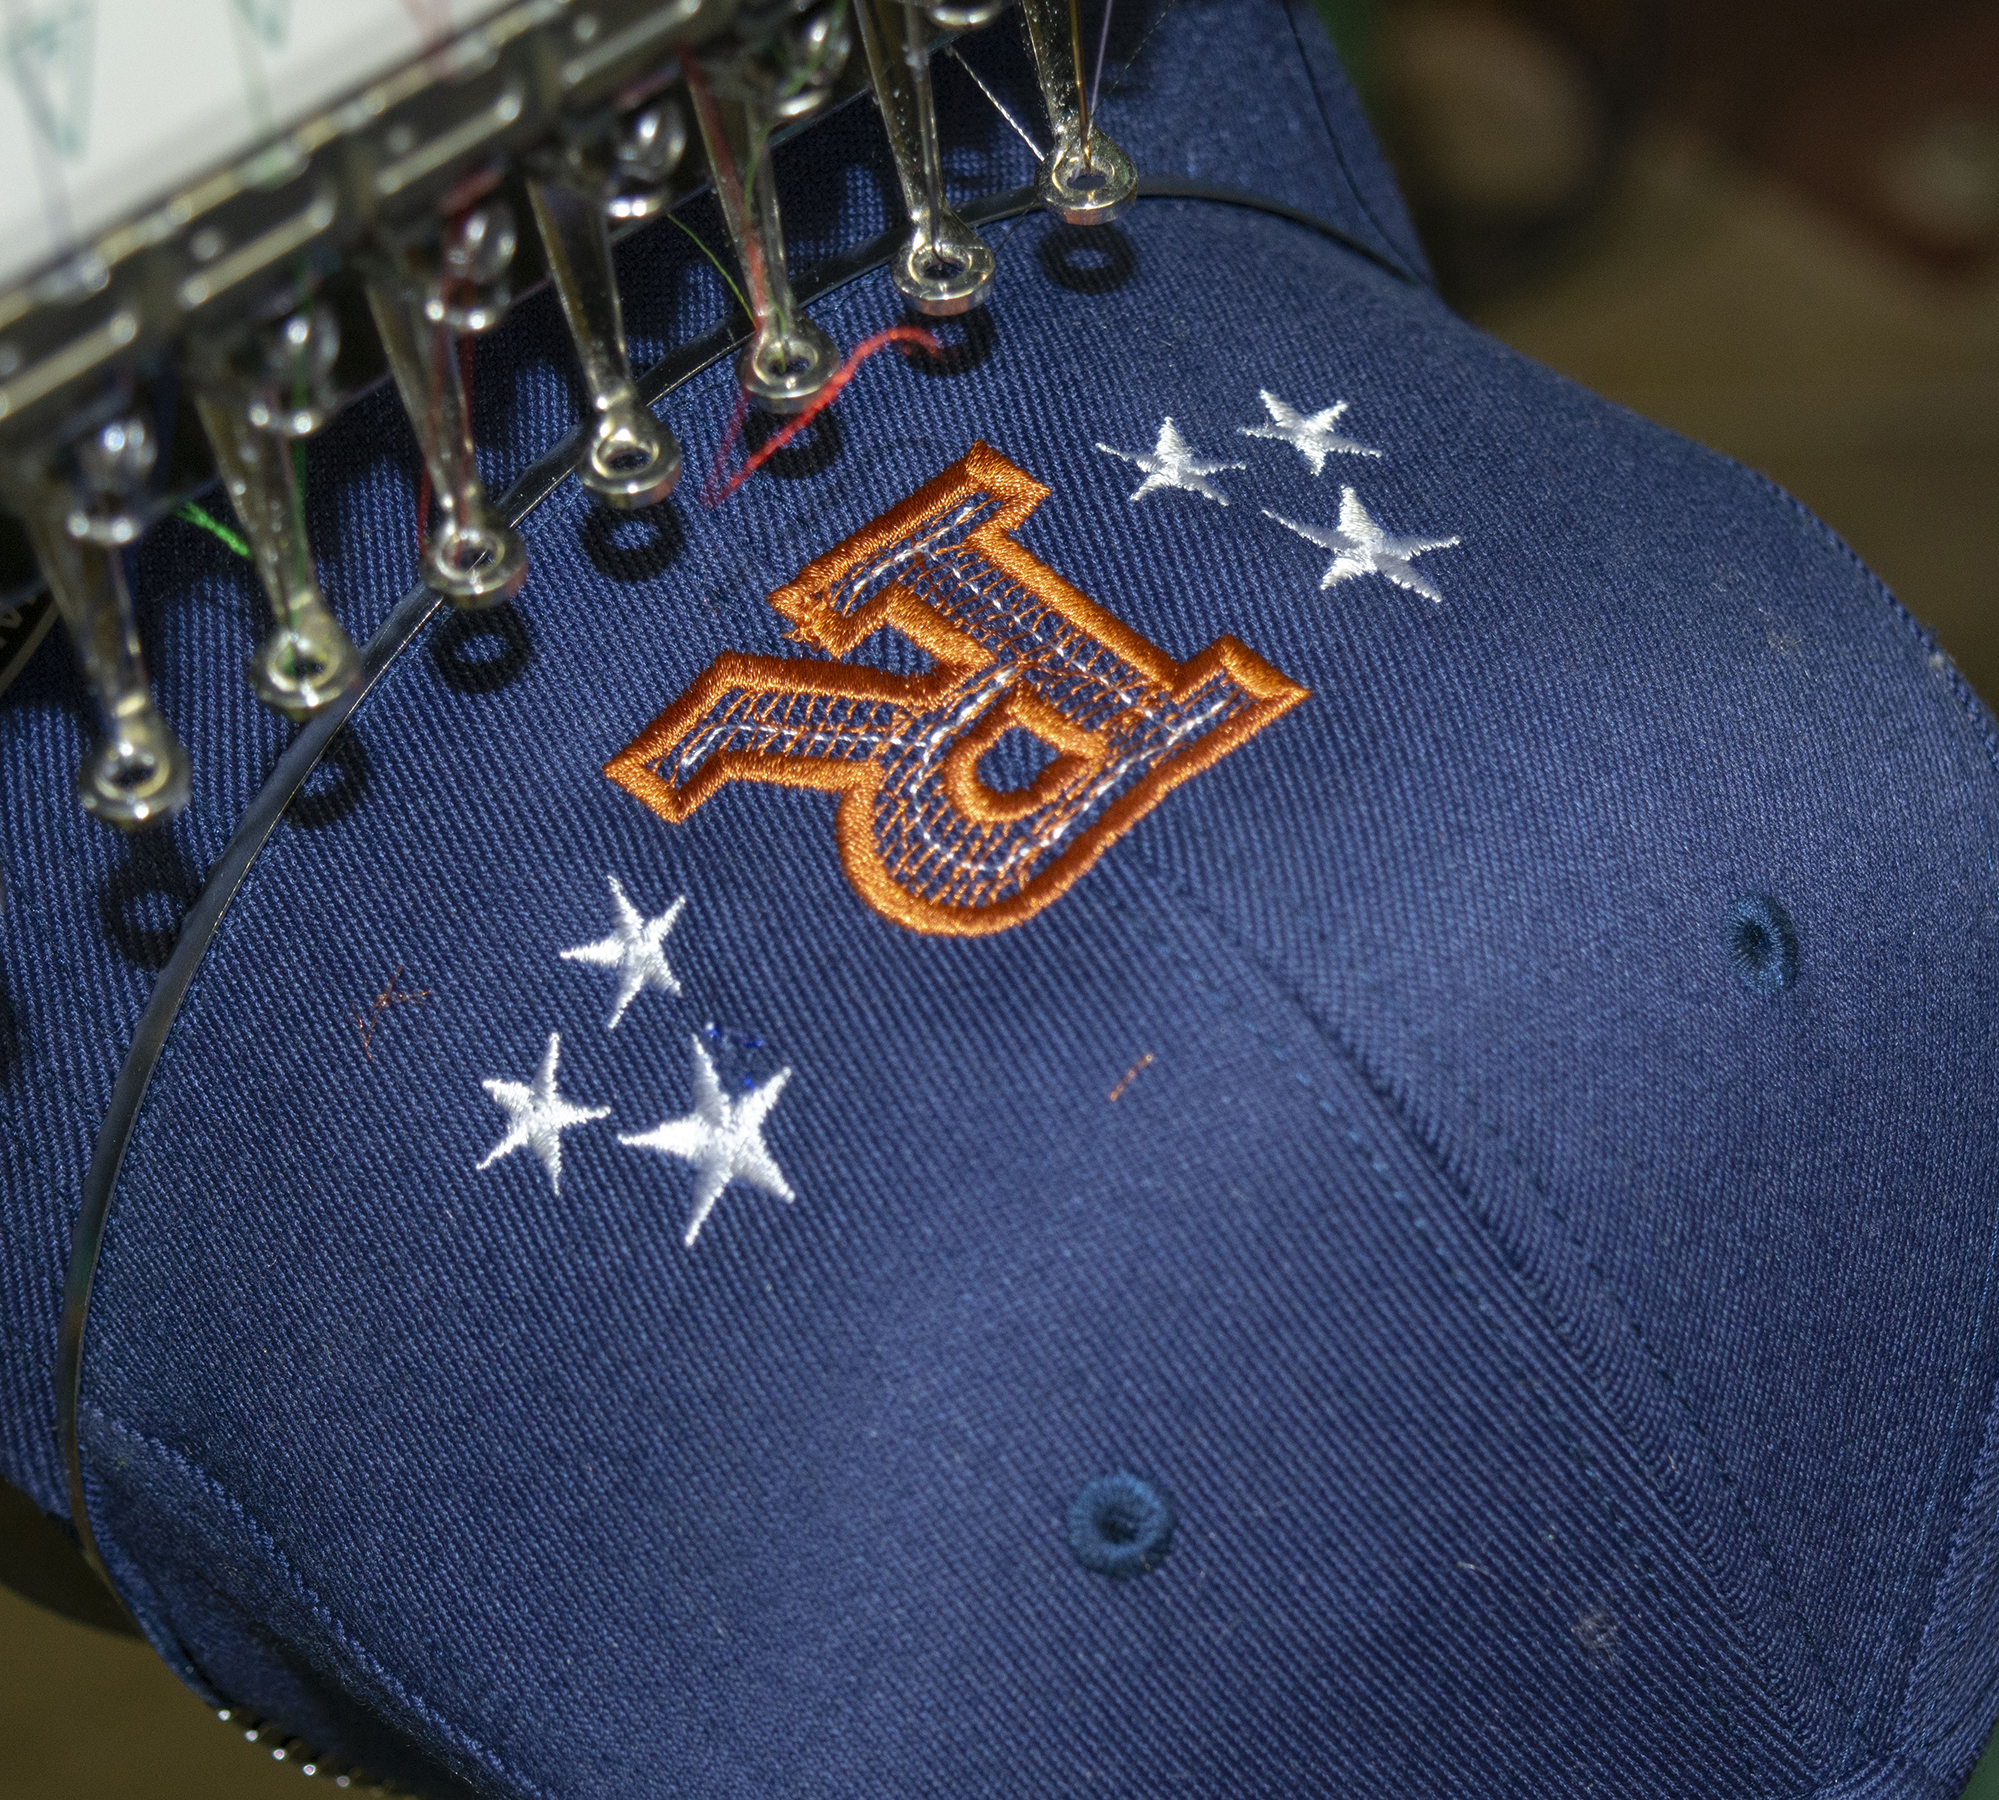 Houston Astros Baseball Shape Embroidery, Baseball Design File